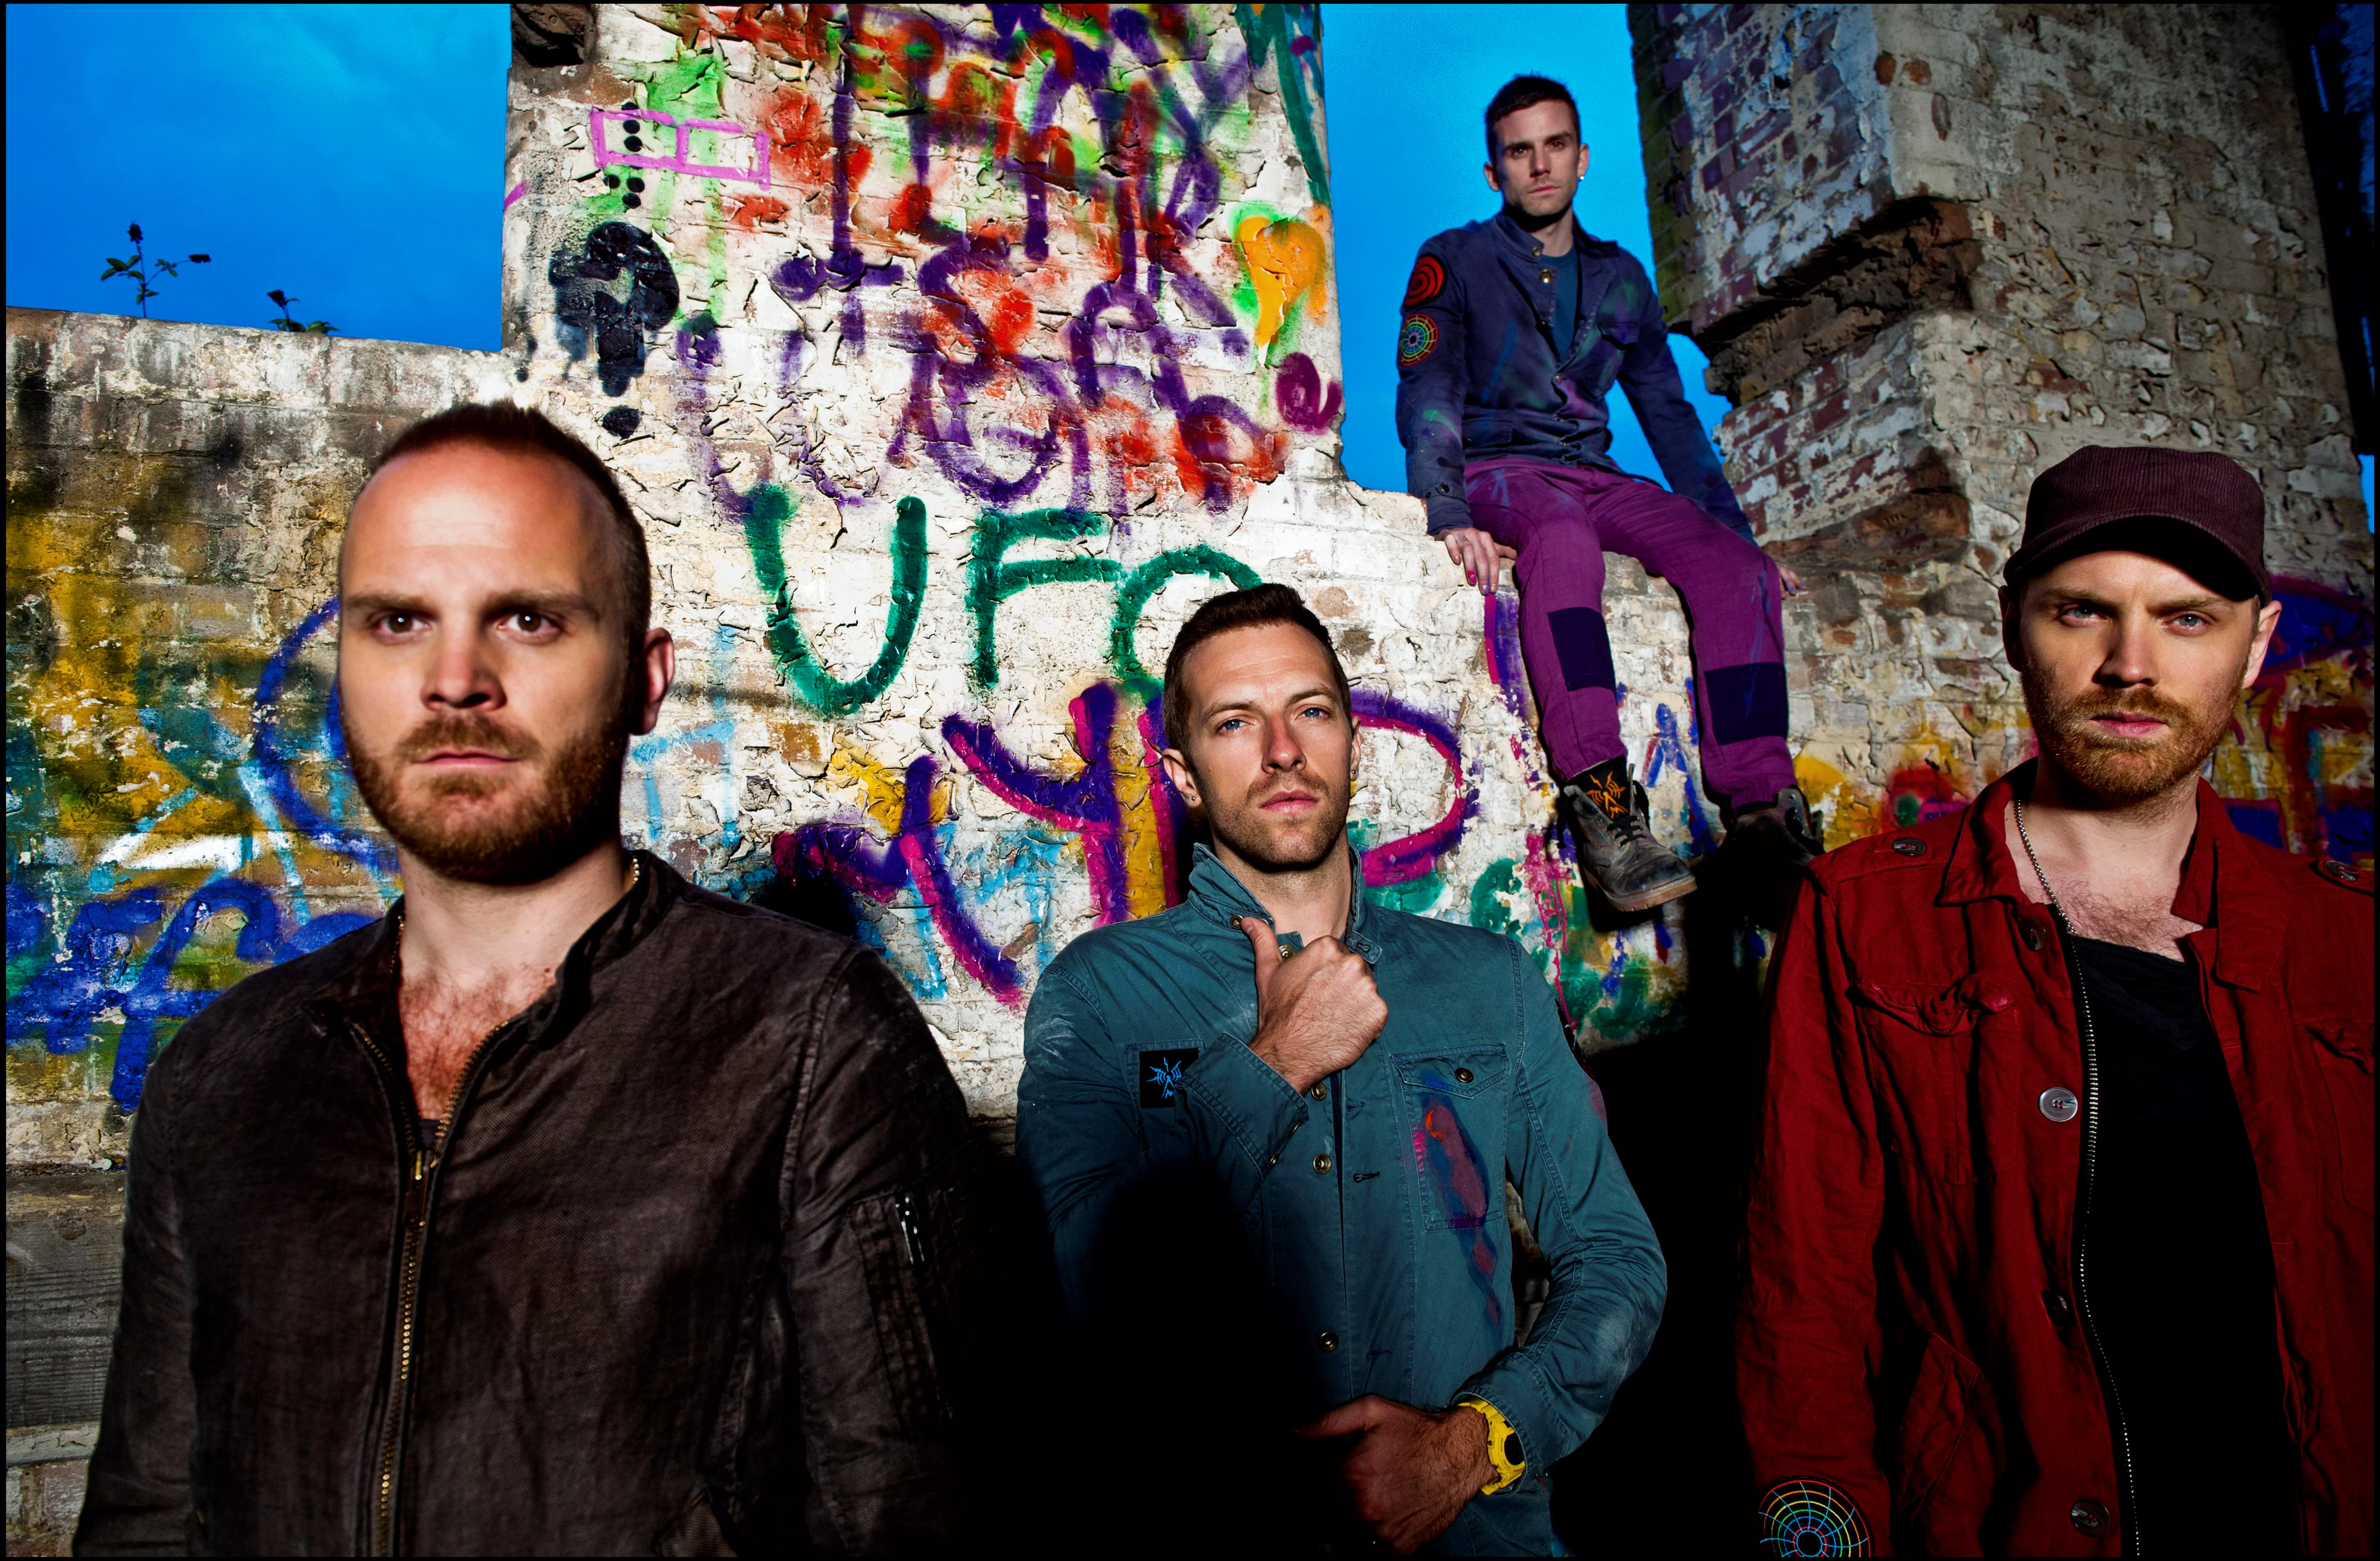 Lyt til Coldplays nye sang "Up In Flames"